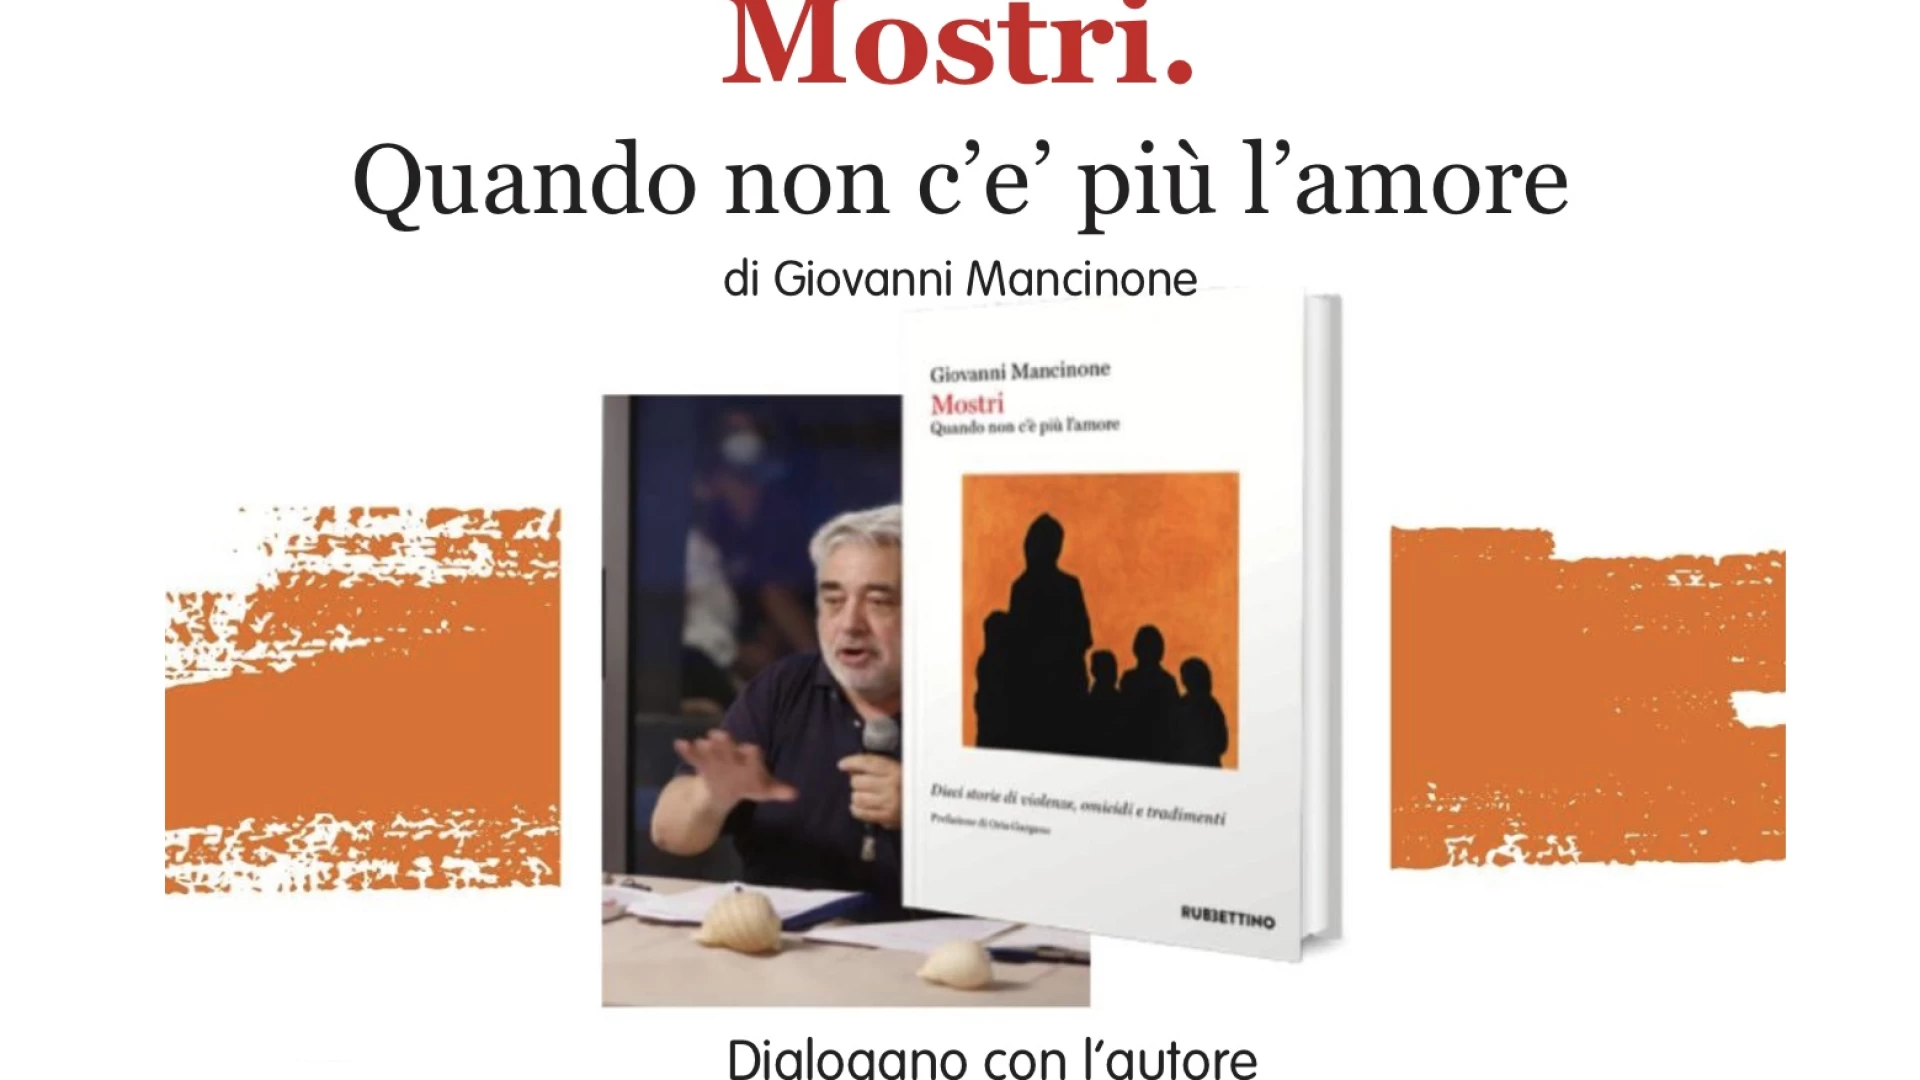 “Mostri” al Visioni City Festival di Sessa Aurunca: Mancinone presenterà il suo ultimo lavoro nella kermesse letteraria dedicata al poeta romano Gaio Lucilio